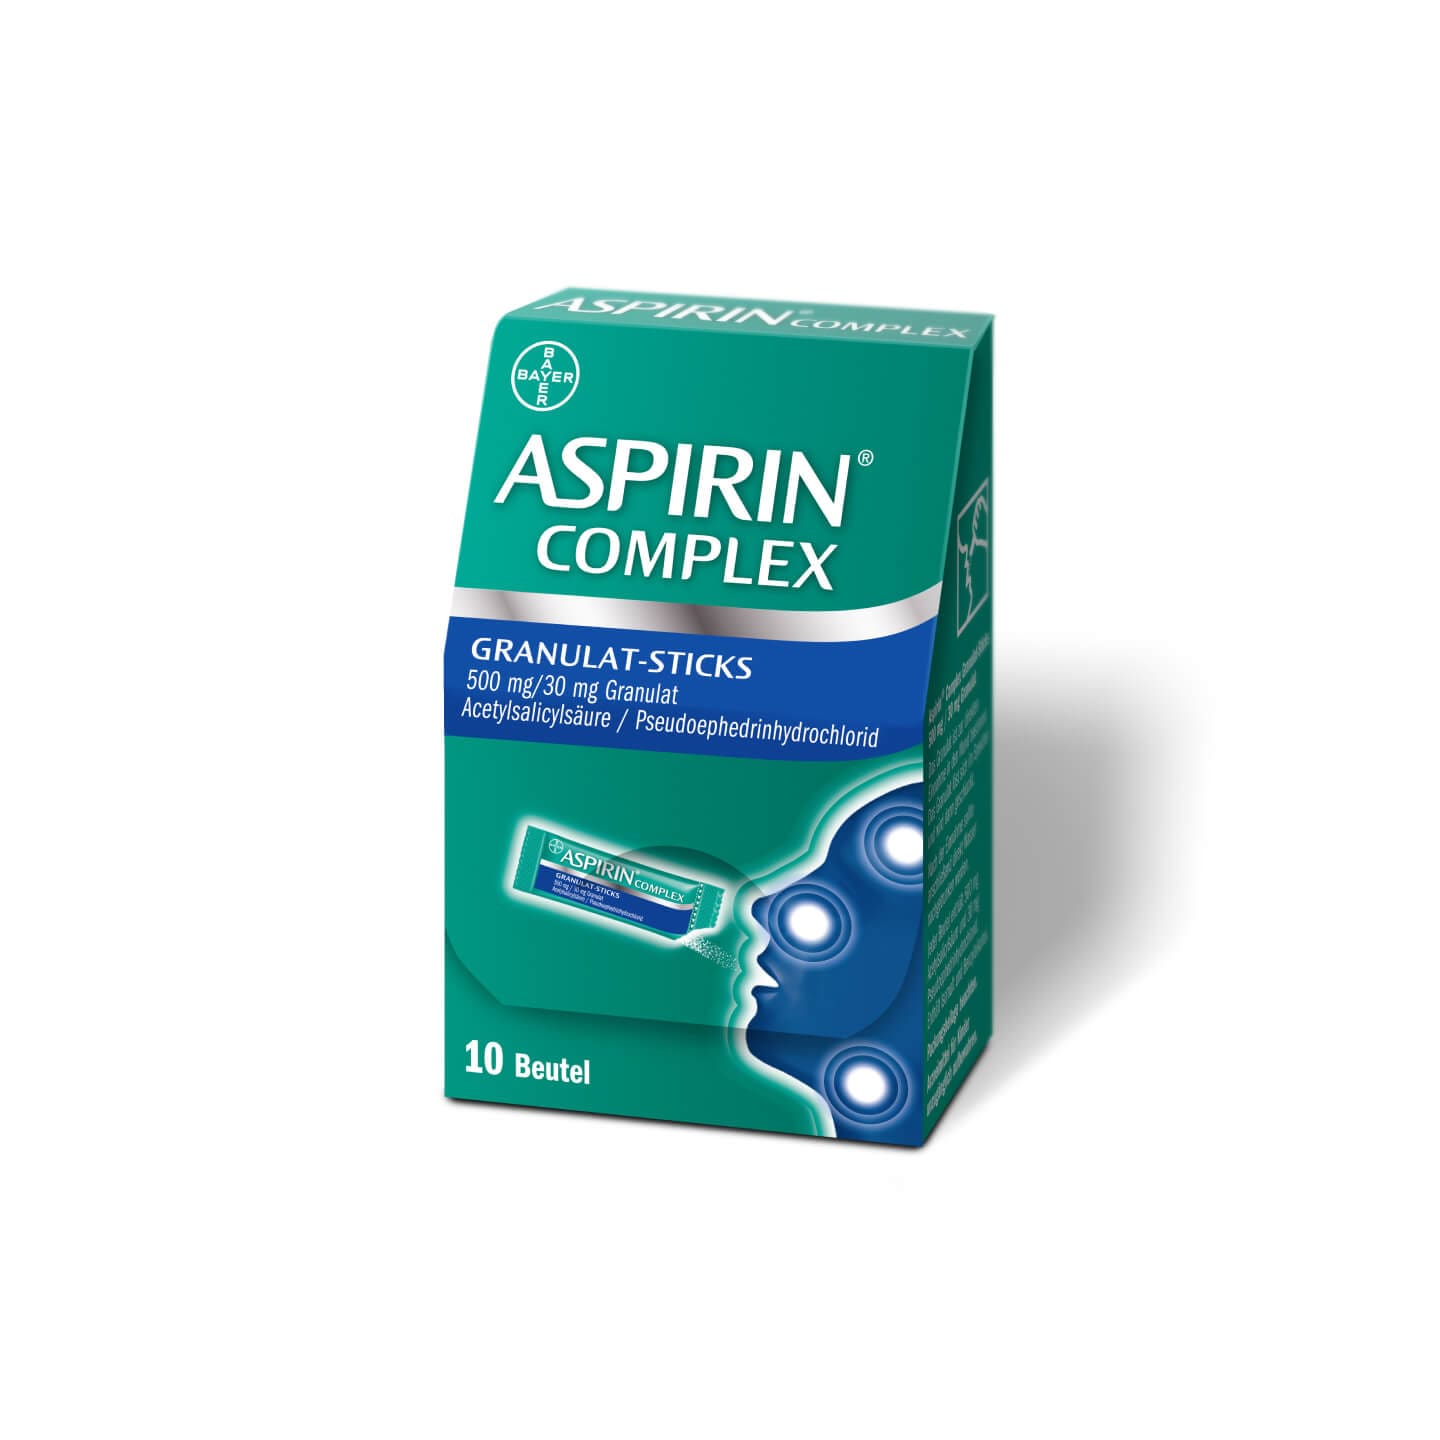 Aspirin® Complex Granulat-Sticks